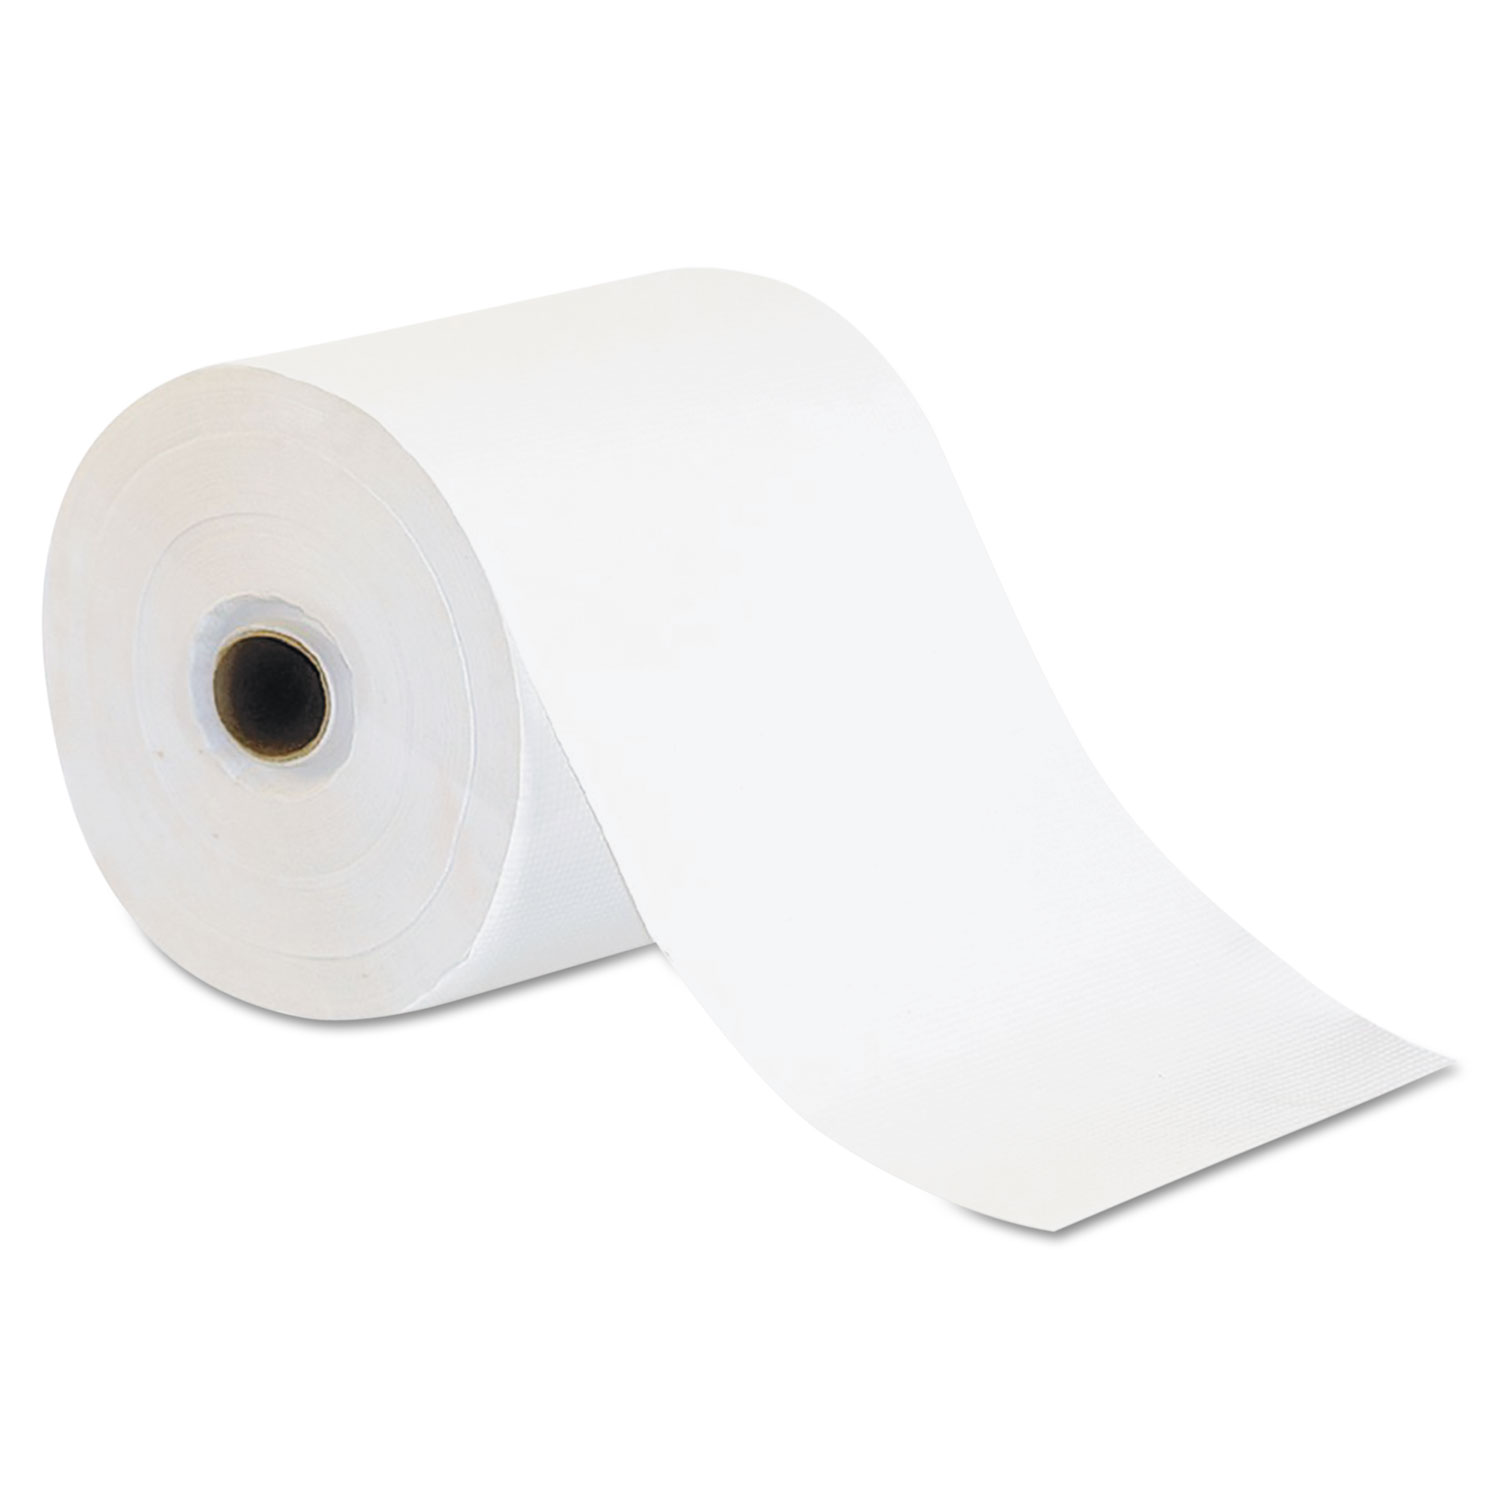 Towlmastr Max 2000 Roll Towel (Y-Series), White, 7 5/8 x 700 ft, 6/Carton